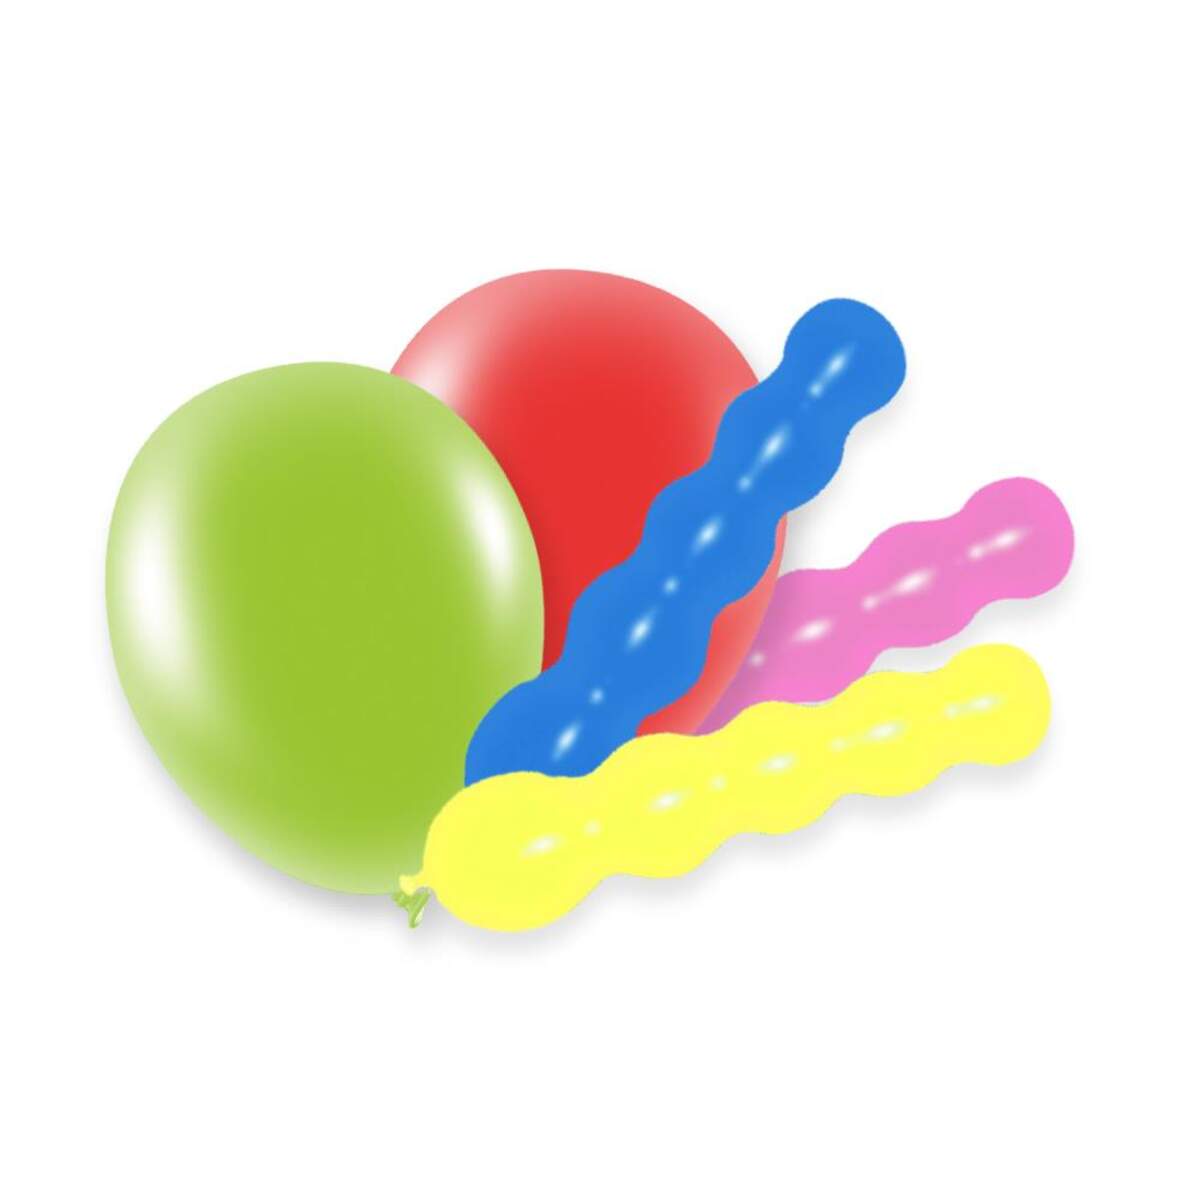 Melloc 21 Ballons Knobbies + Runde